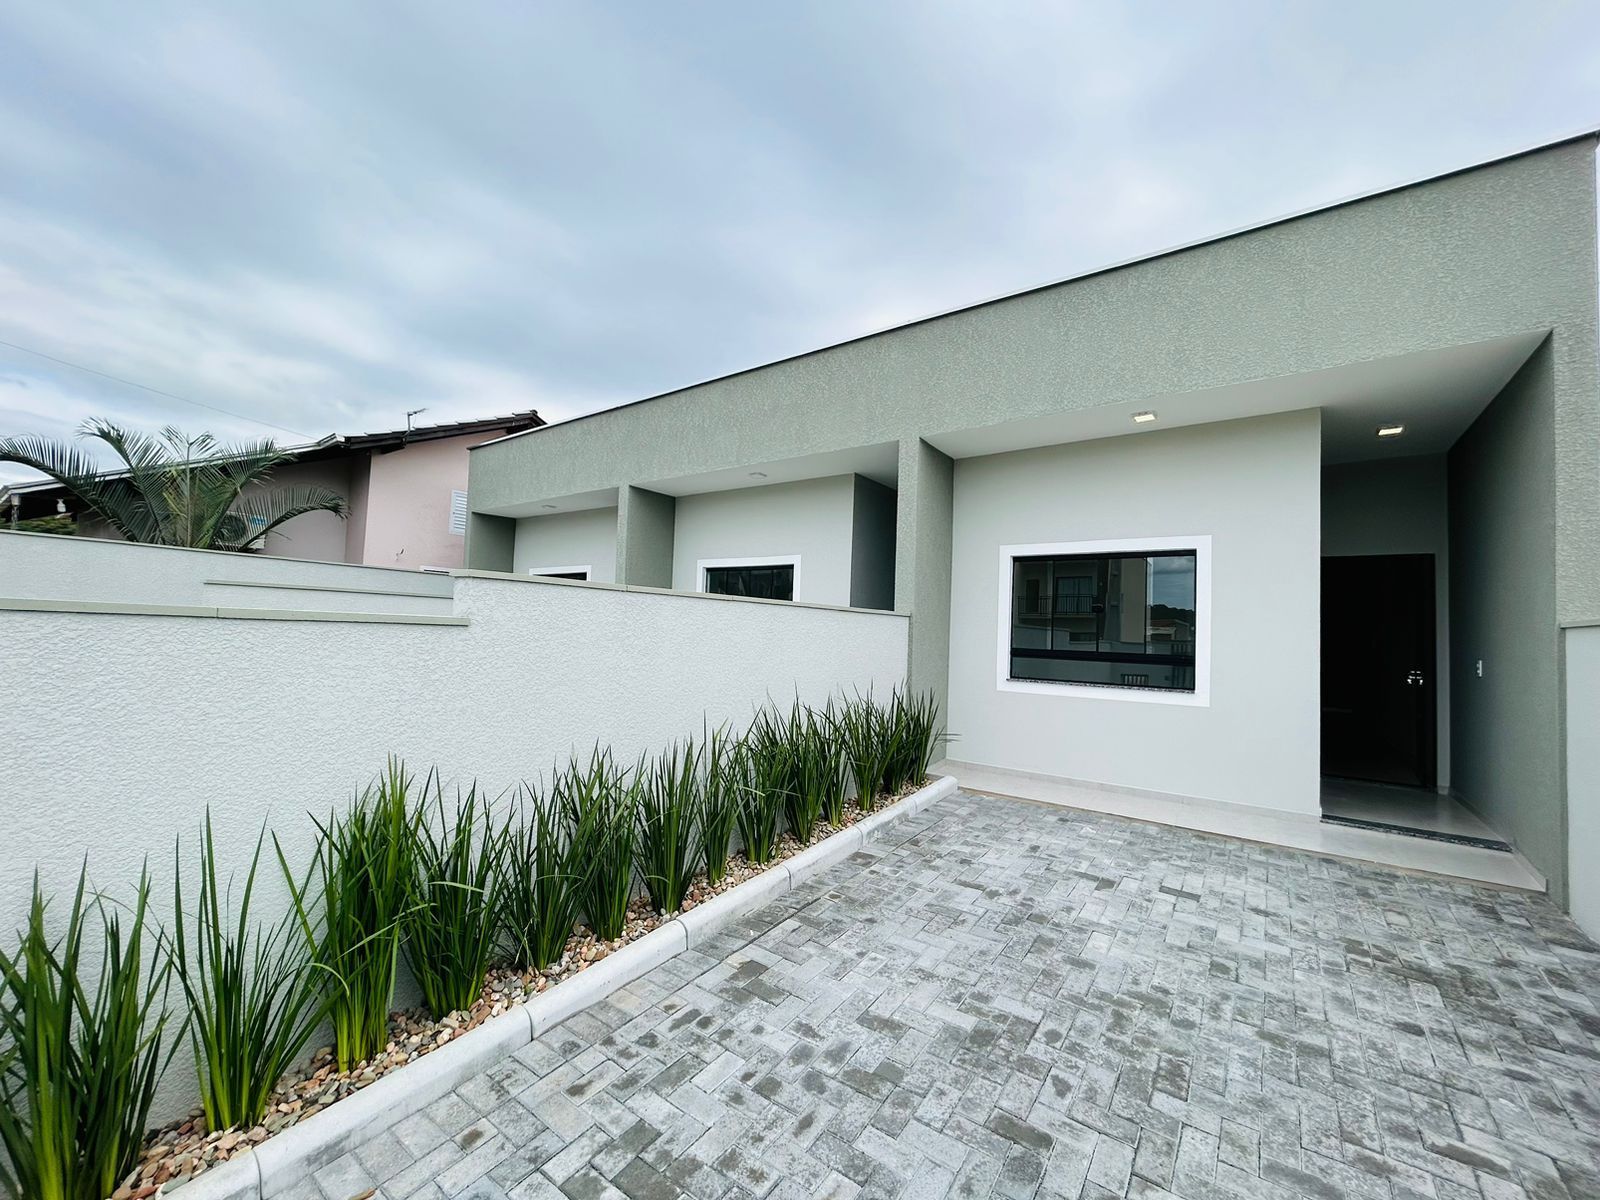 Casa  venda  no Rio Branco - Guaramirim, SC. Imveis